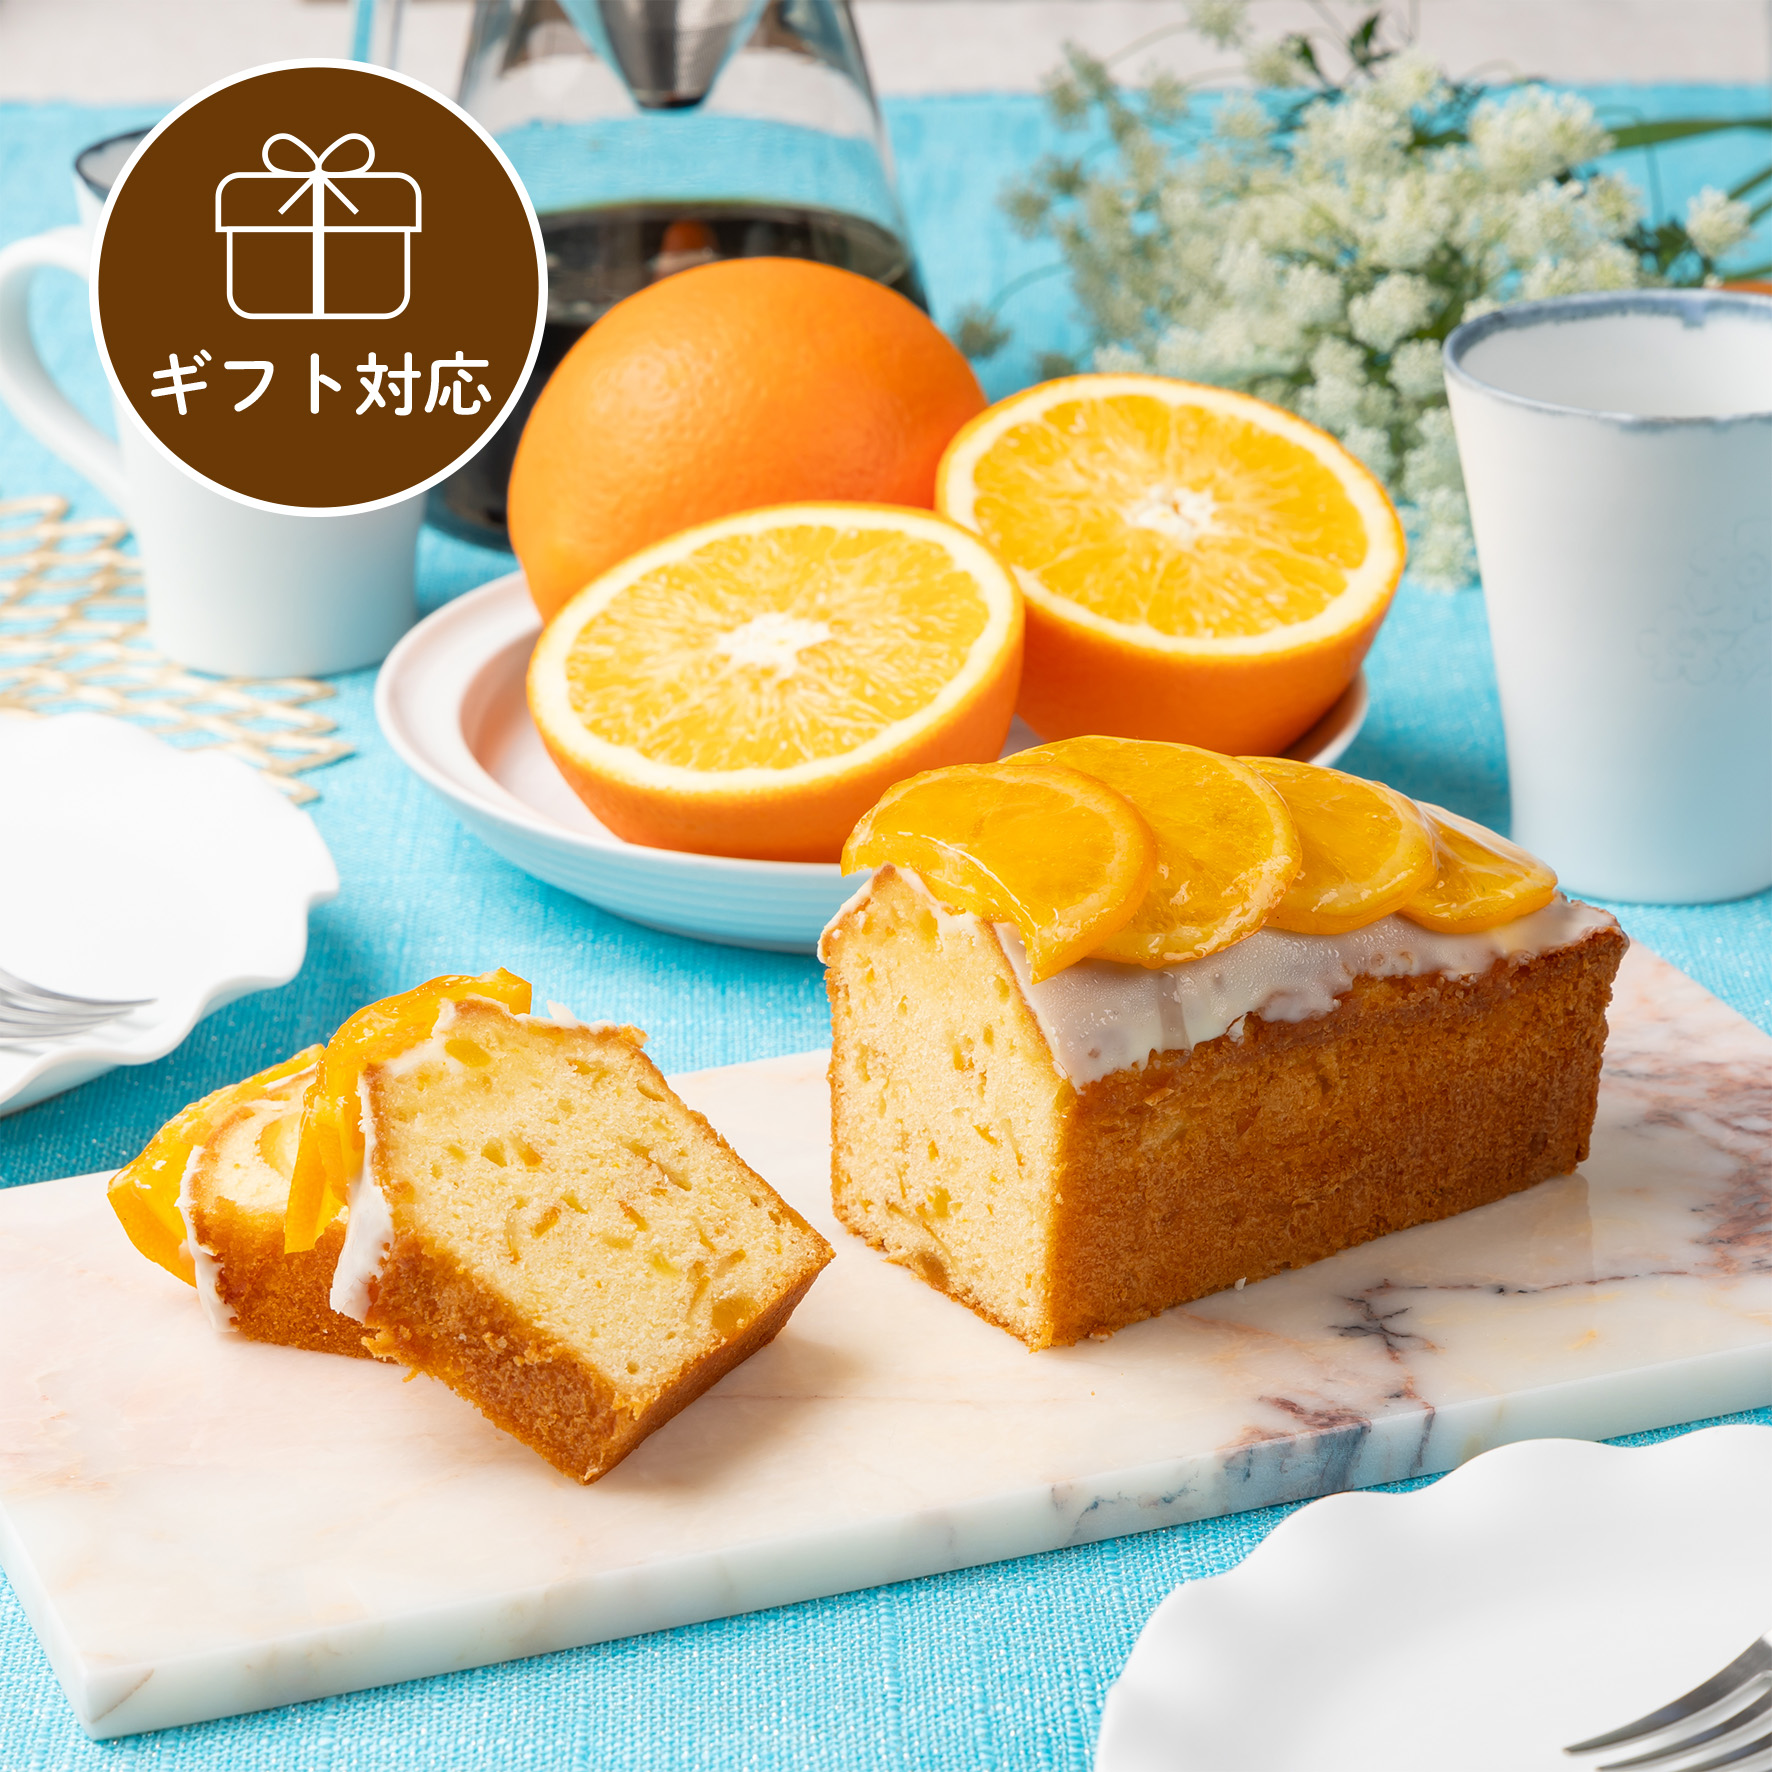 【ギフト】ケーク・オランジュ/cake orange